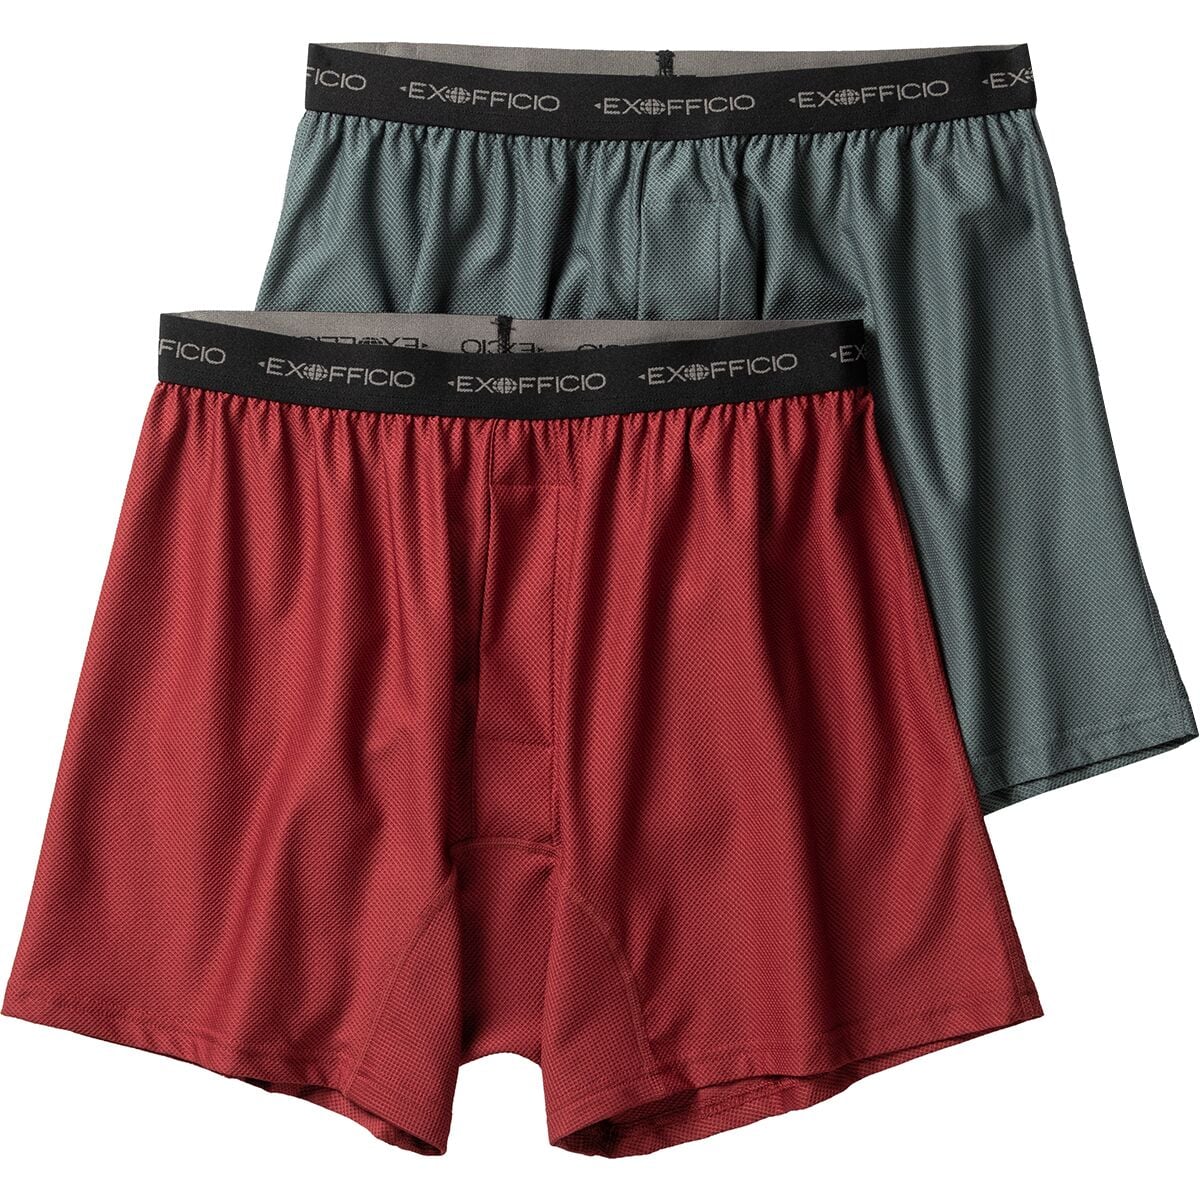 Patagonia Bokserki Essential Boxer Briefs 6in Underwear (joy/pitch